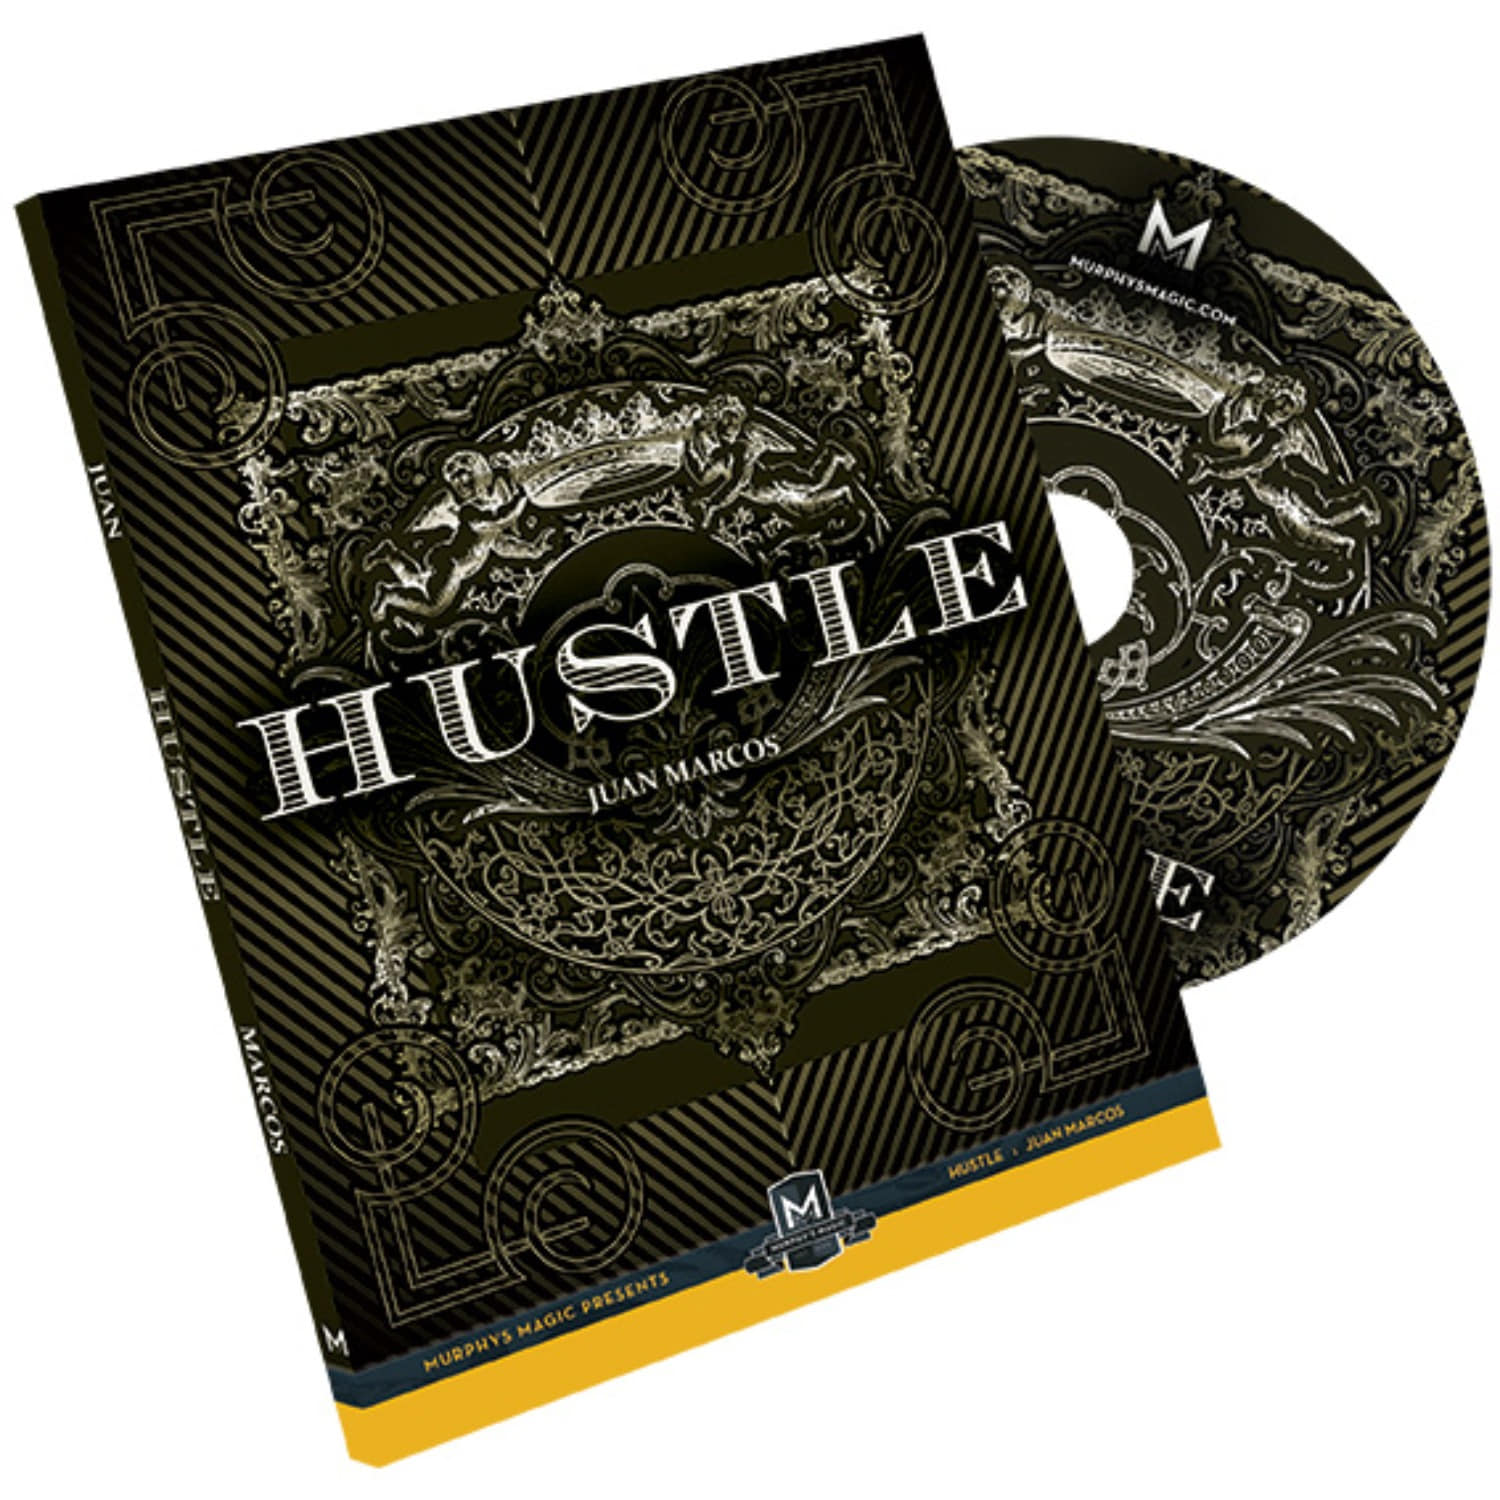 허슬 Hustle (DVD and Gimmick) by Juan Manuel Marcos